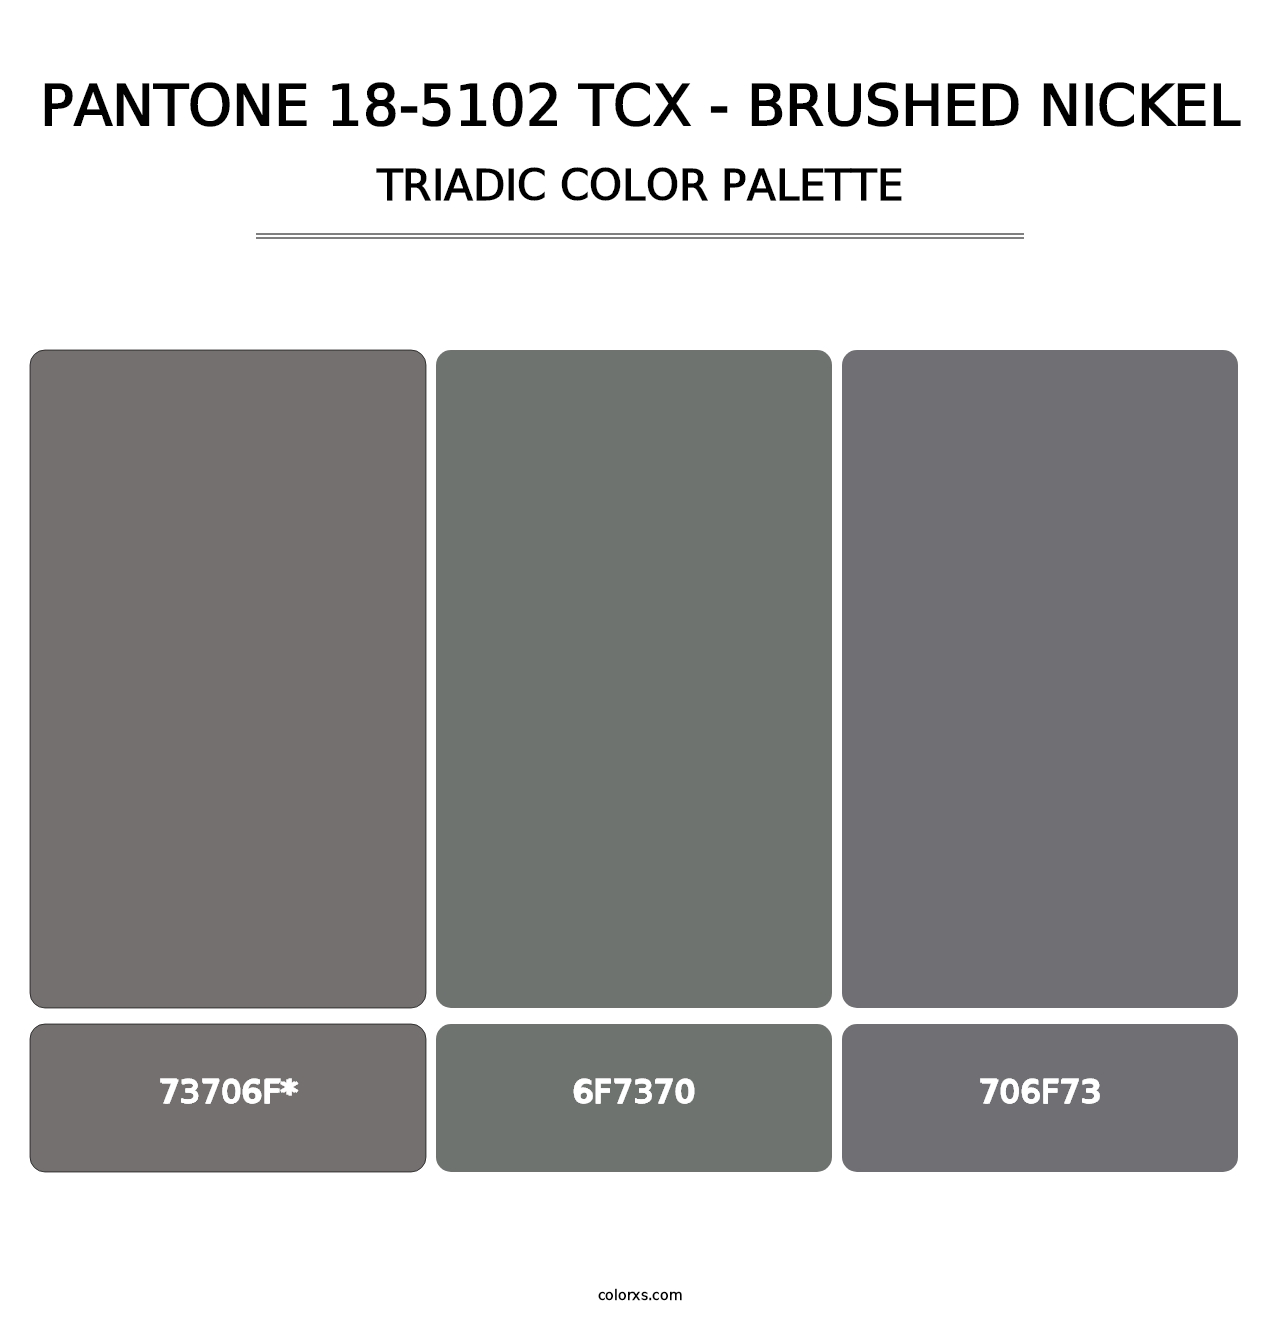 PANTONE 18-5102 TCX - Brushed Nickel - Triadic Color Palette